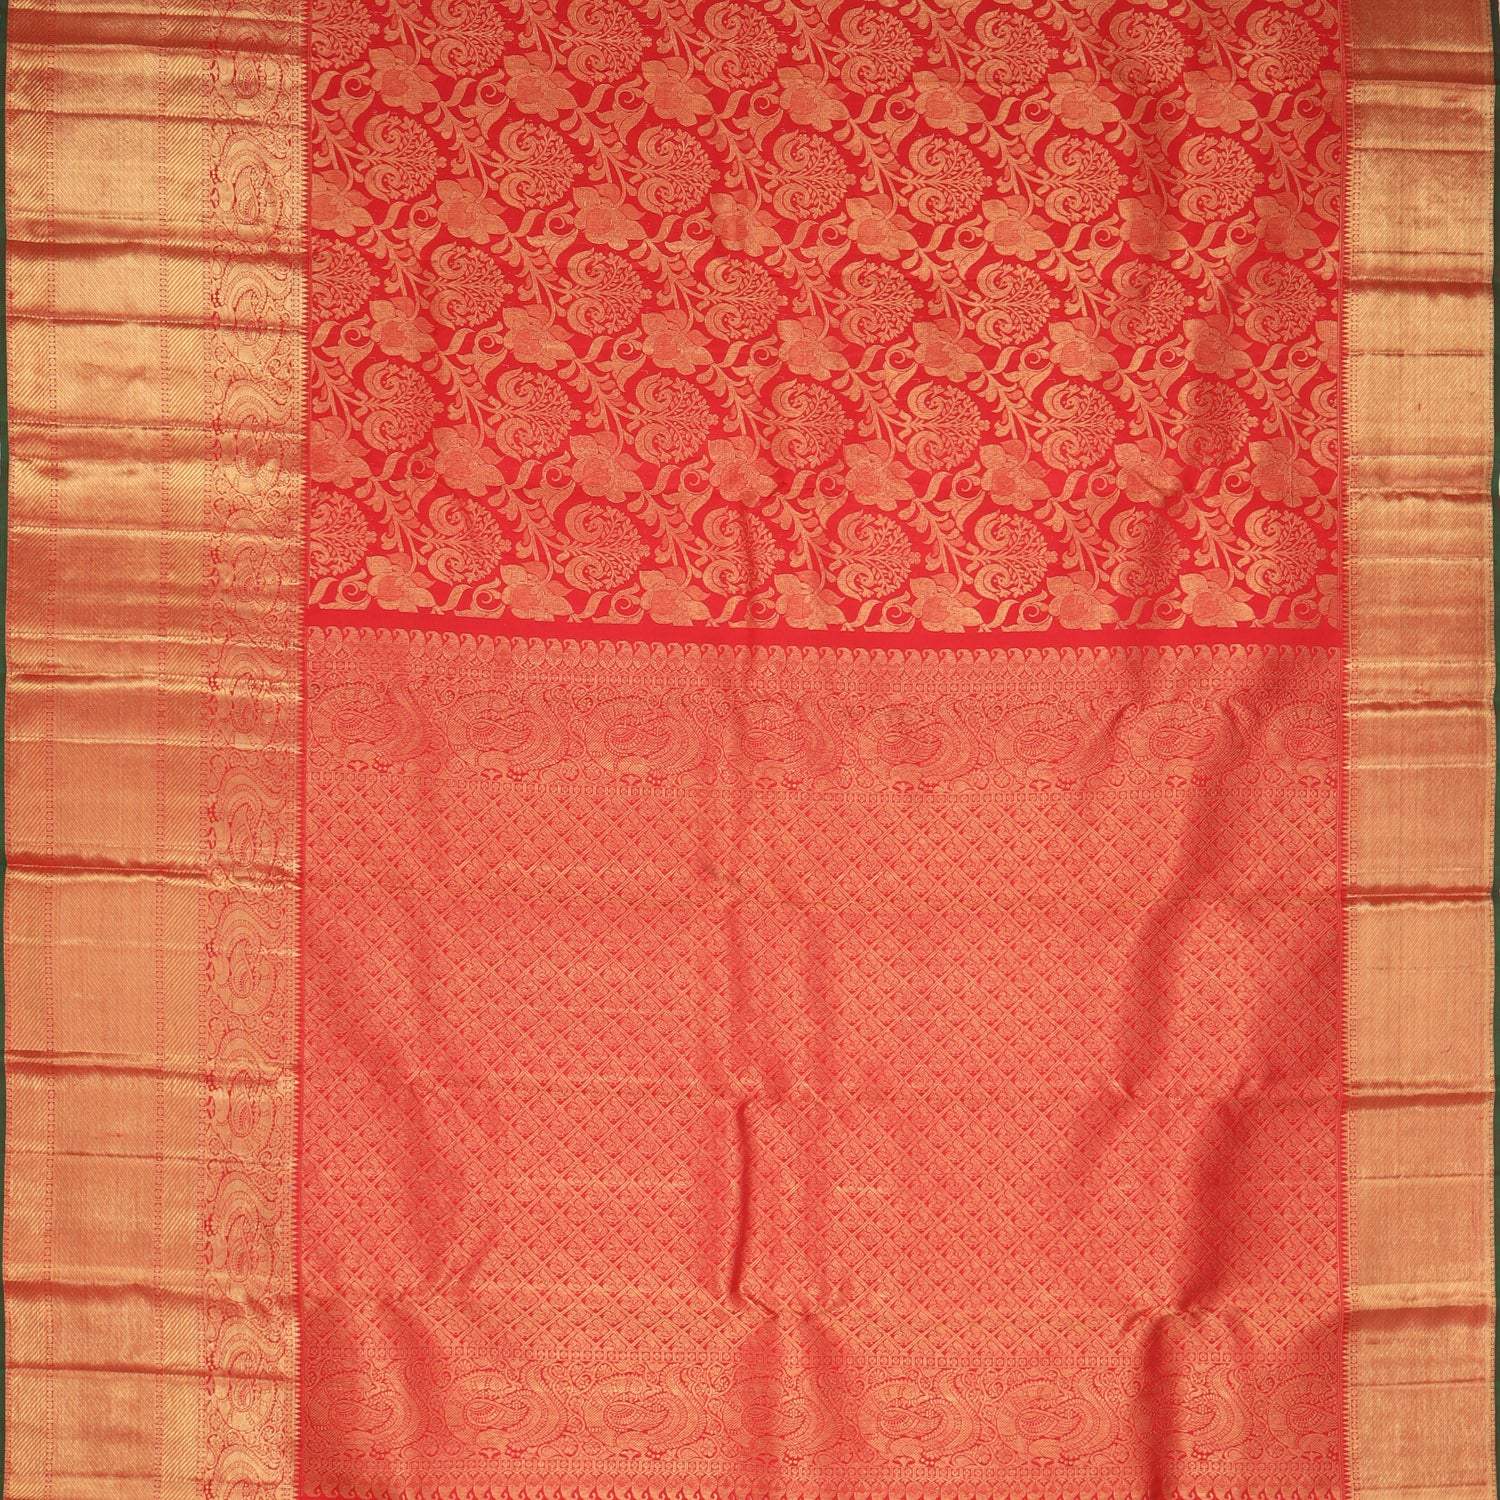 Bright Red Kanjivaram Silk Saree With Floral Motif Pattern - Singhania's